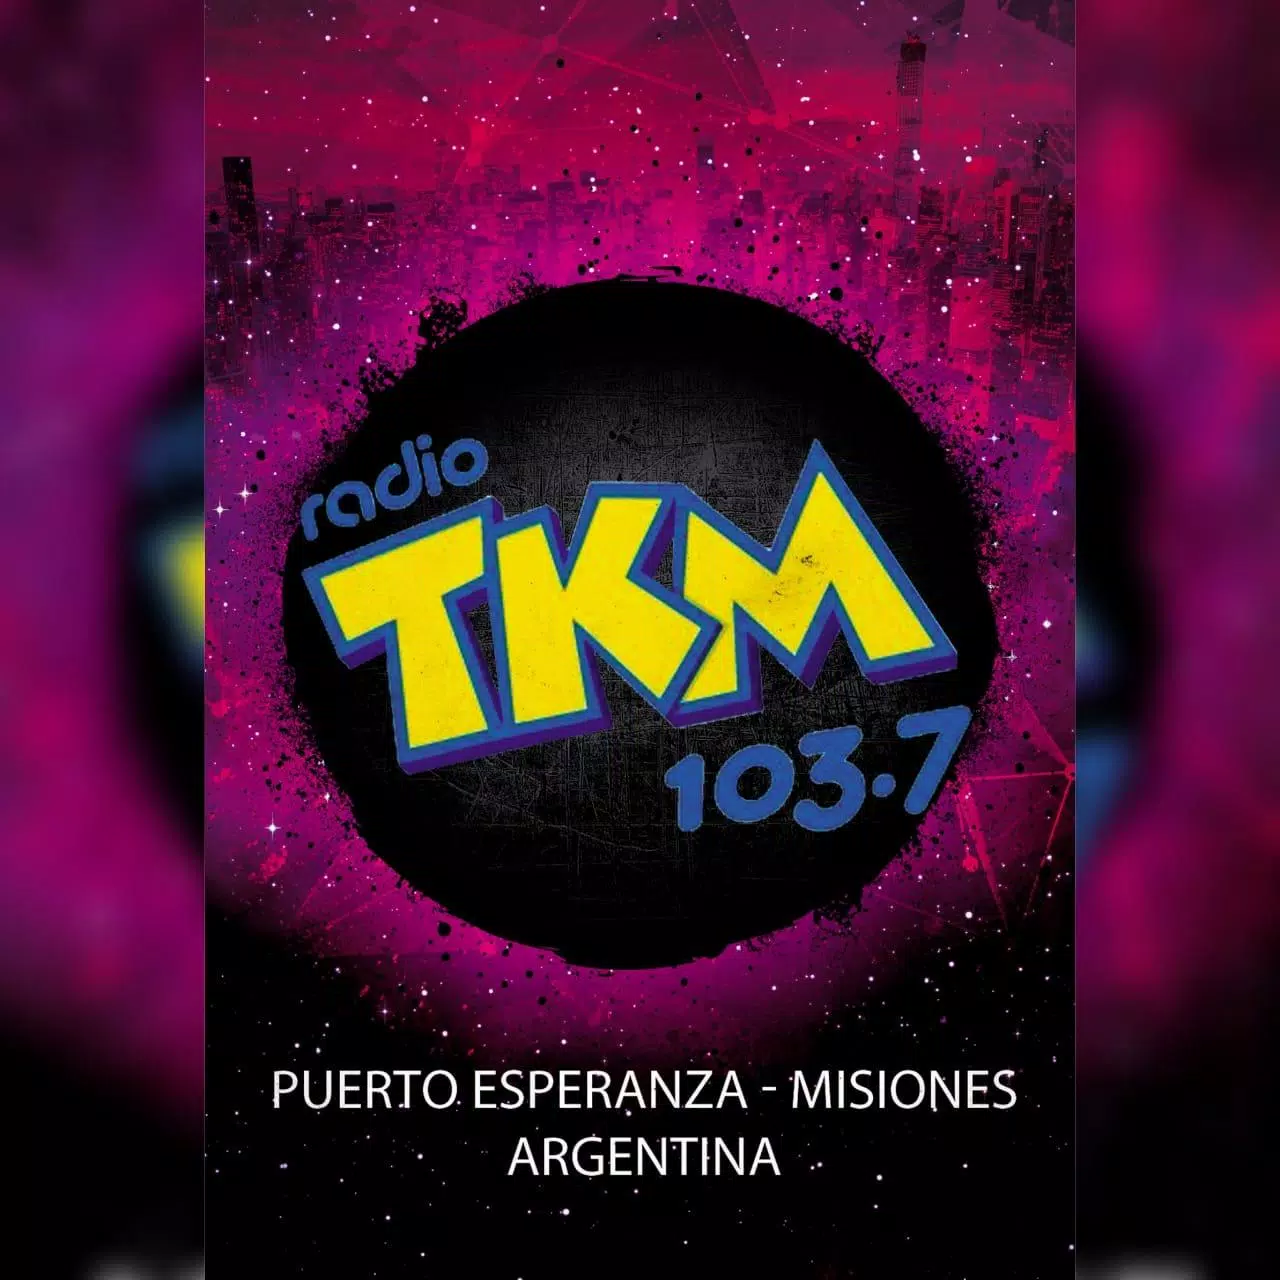 Motear Cardenal Deseo Descarga de APK de Radio TKM 103.7 FM- By Gaston Mello para Android